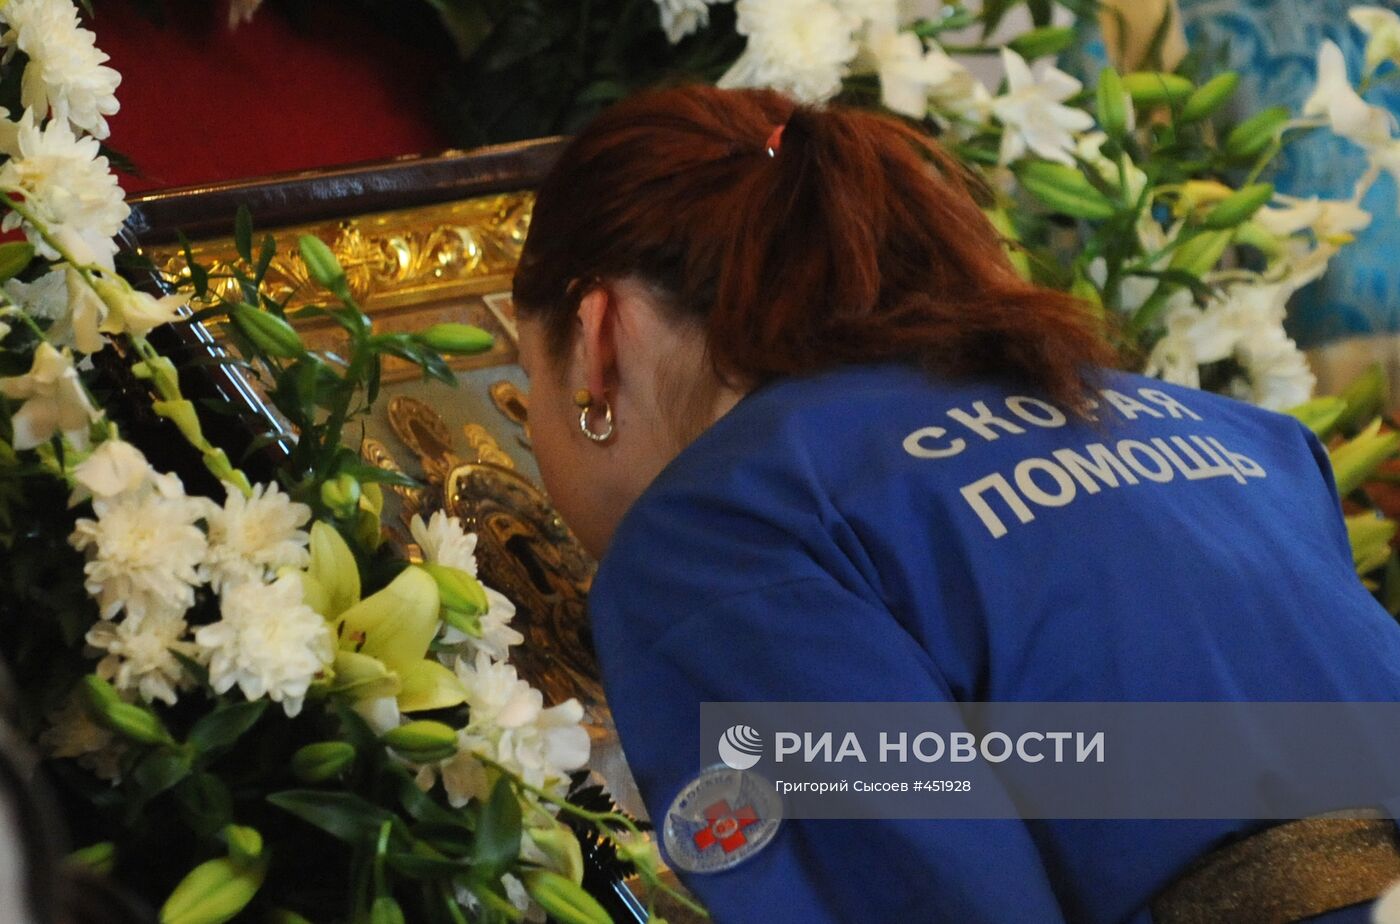 Чудотворная икона Божией Матери "Знамение" доставлена в Москву